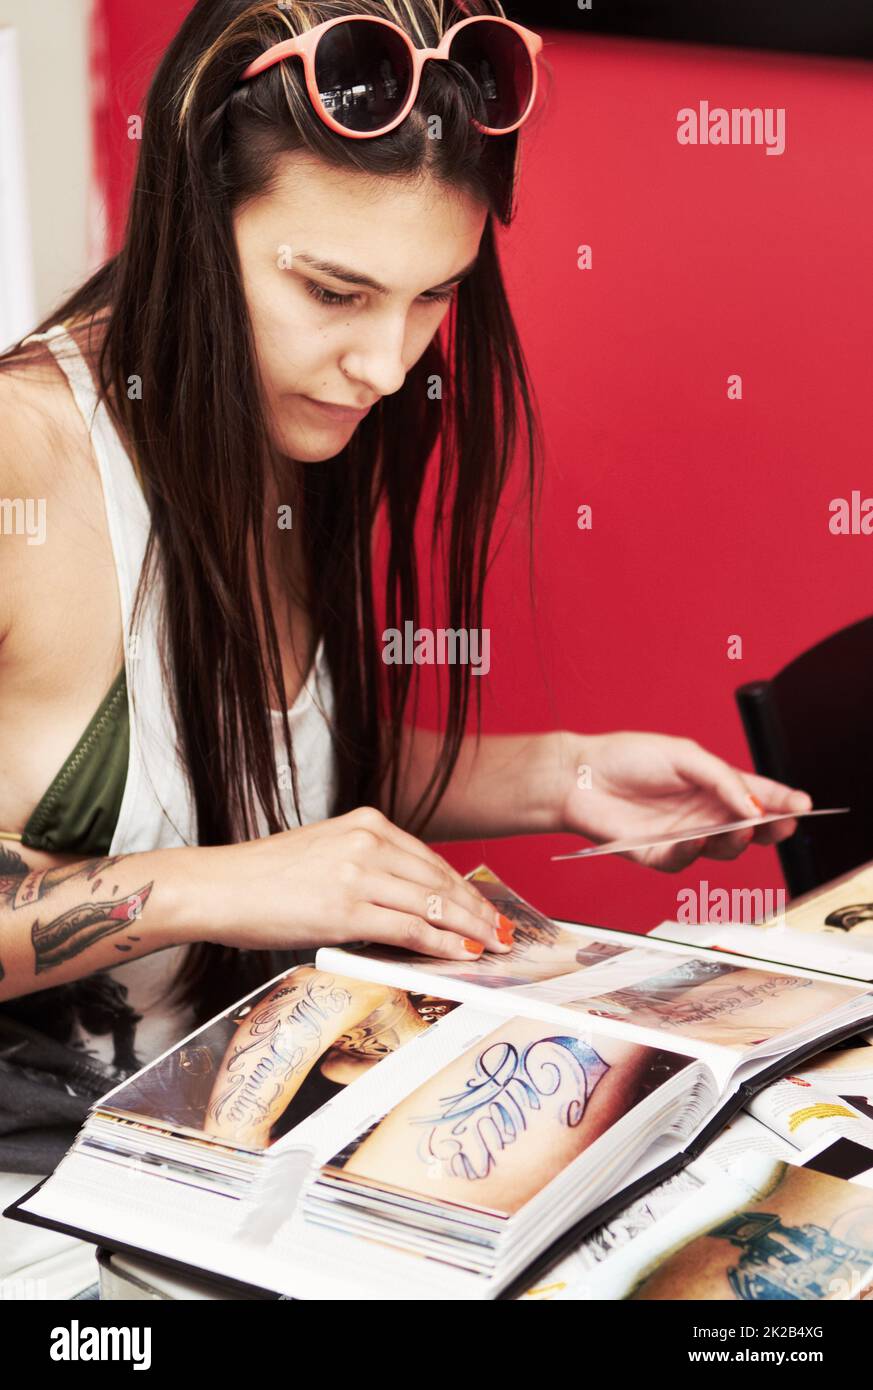 Trouver le modèle à ajouter à sa collection. Photo d'une belle jeune femme tatouée qui patchait à travers un album de dessins de tatouage. Banque D'Images